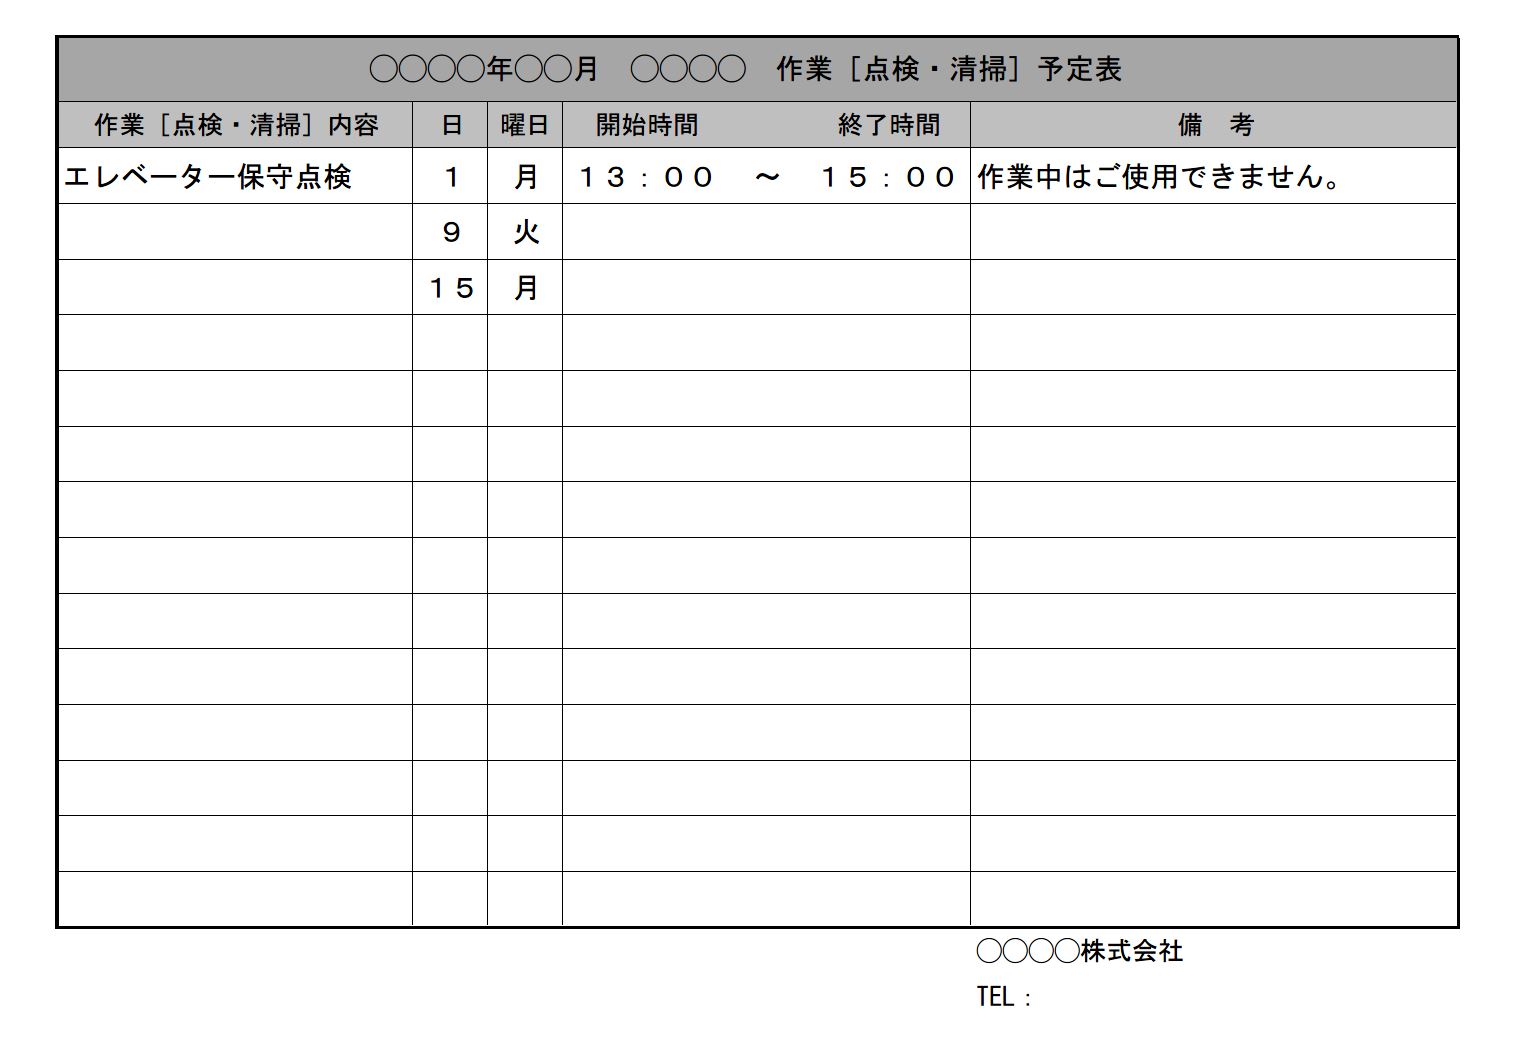 自治会 町内会 月間作業予定表の書式 様式 フォーマット 雛形 ひな形 テンプレート エクセル Excel 01 文書 テンプレート の無料ダウンロード